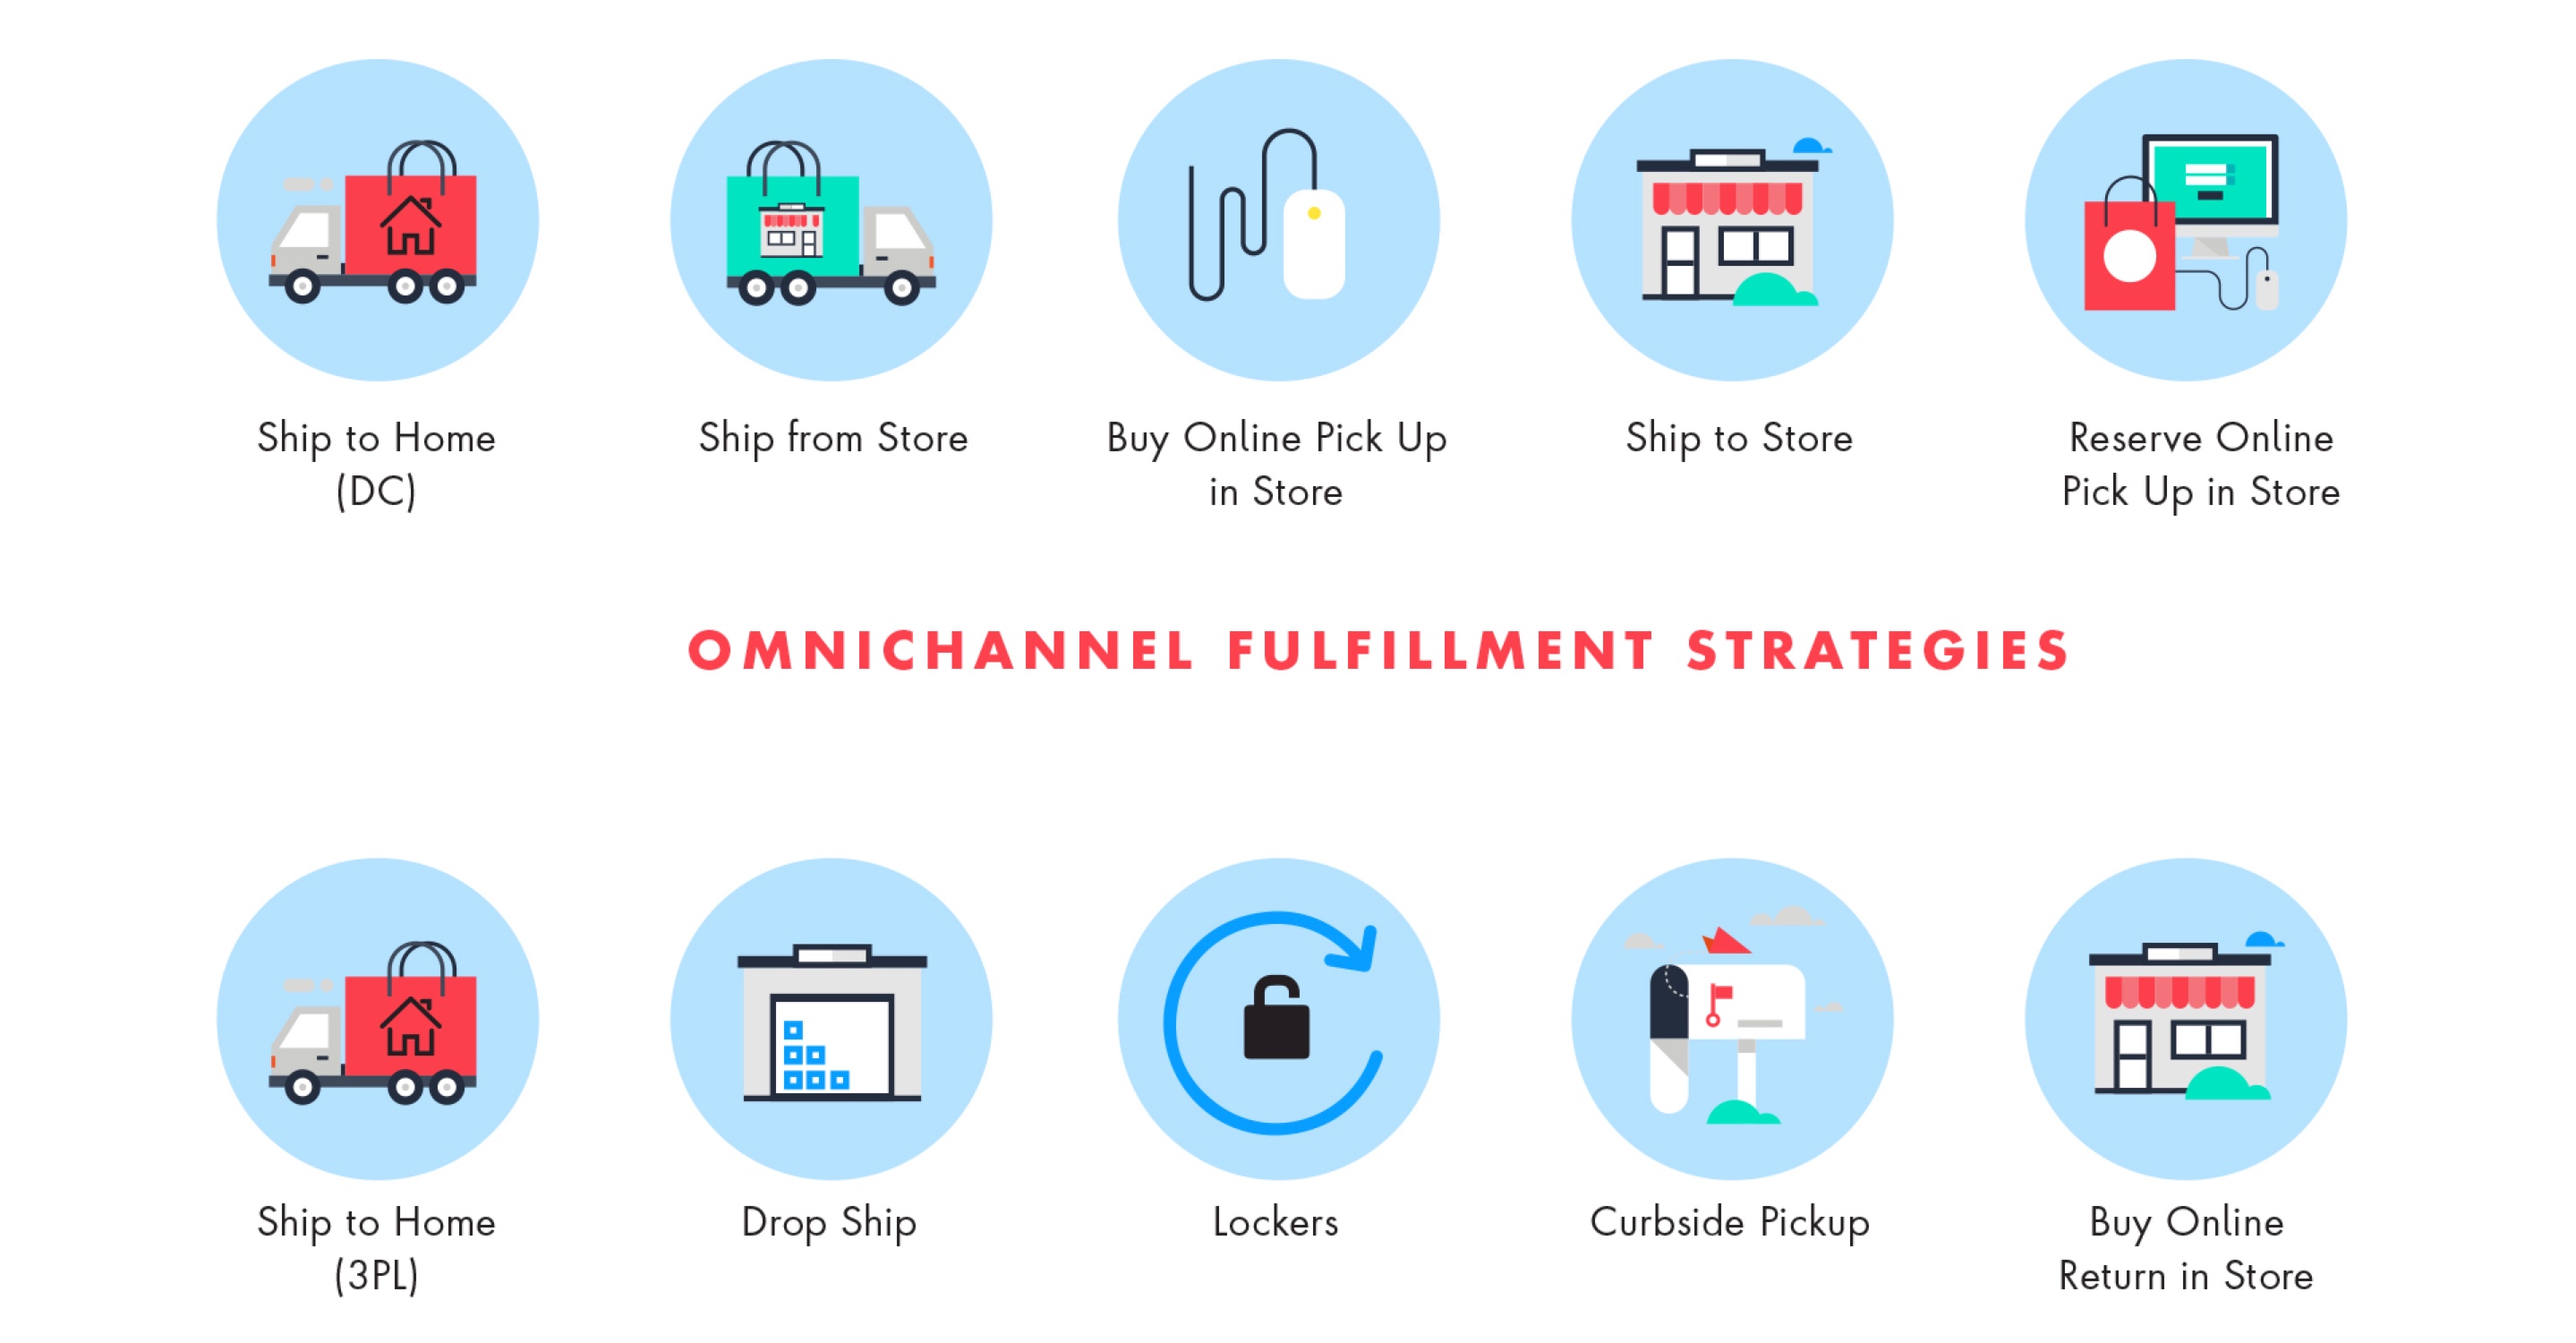 Omnichannel fulfillment strategies